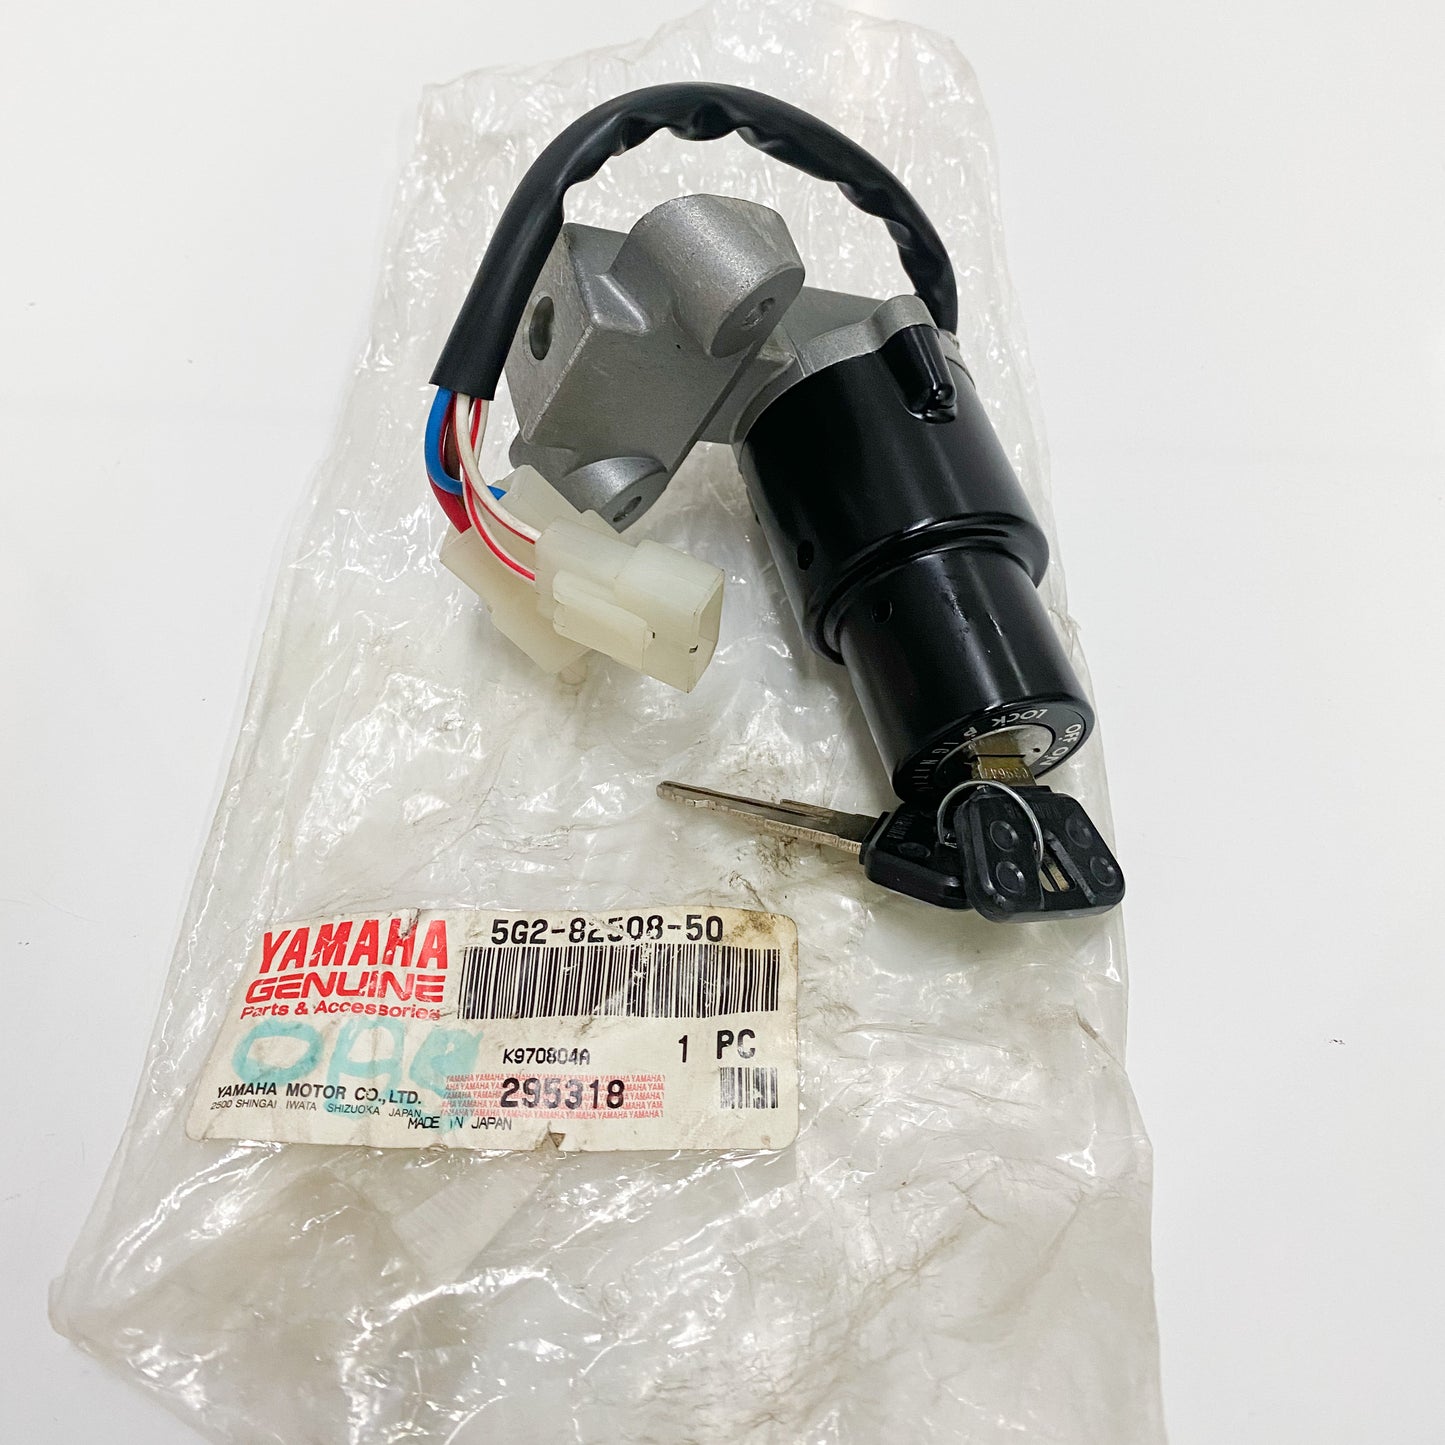 Yamaha Main Switch Assembly 5G2-82508-50-00